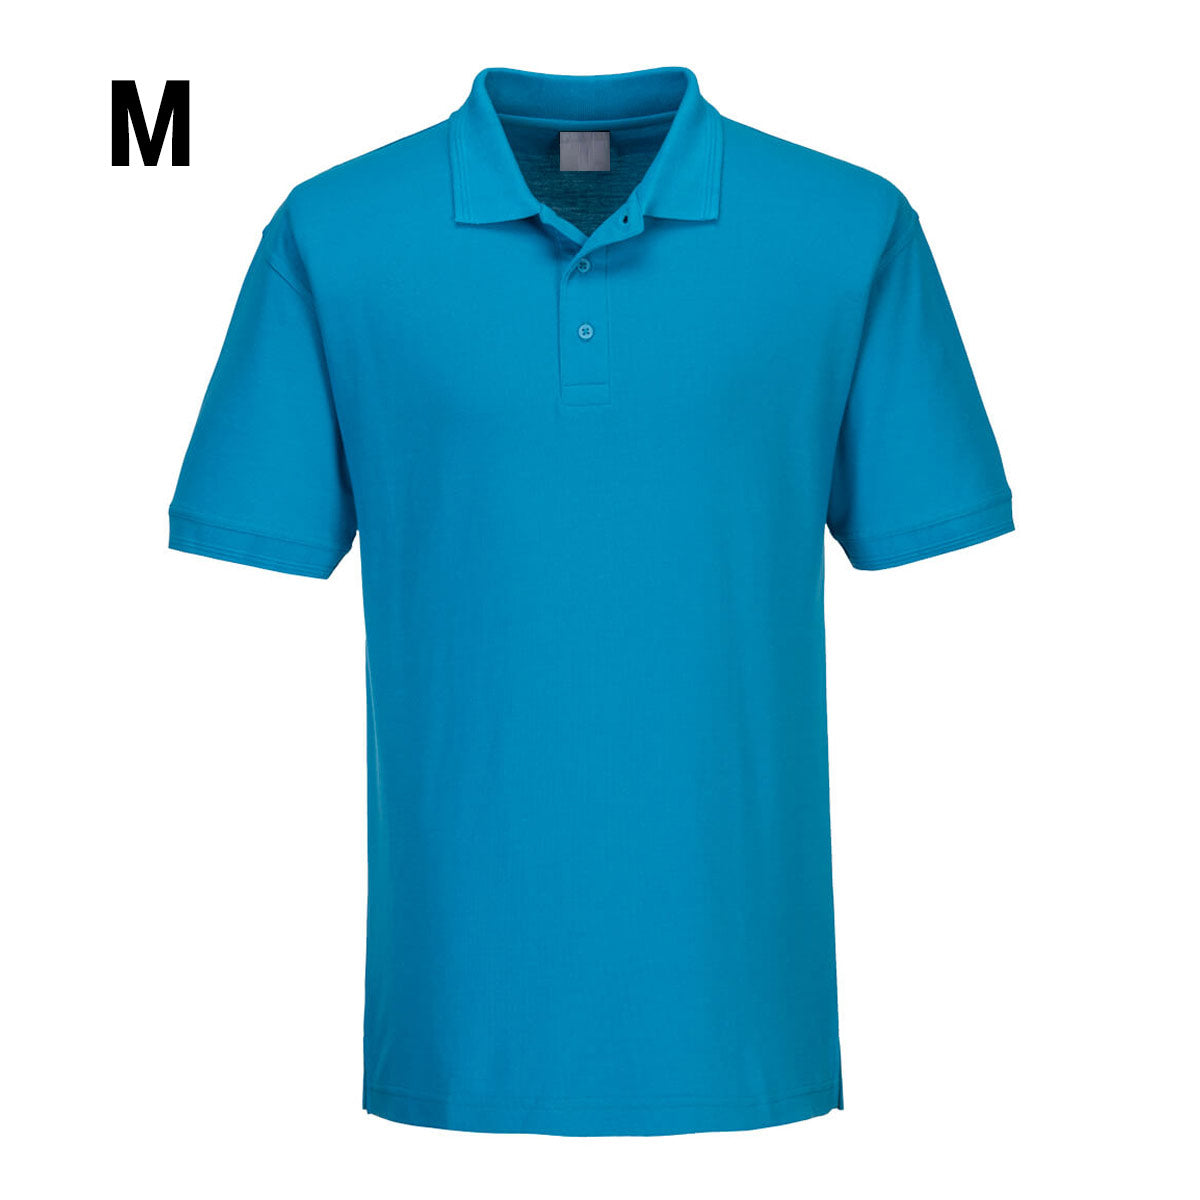 Poloskjorte for menn - Vannblå - størrelse: M